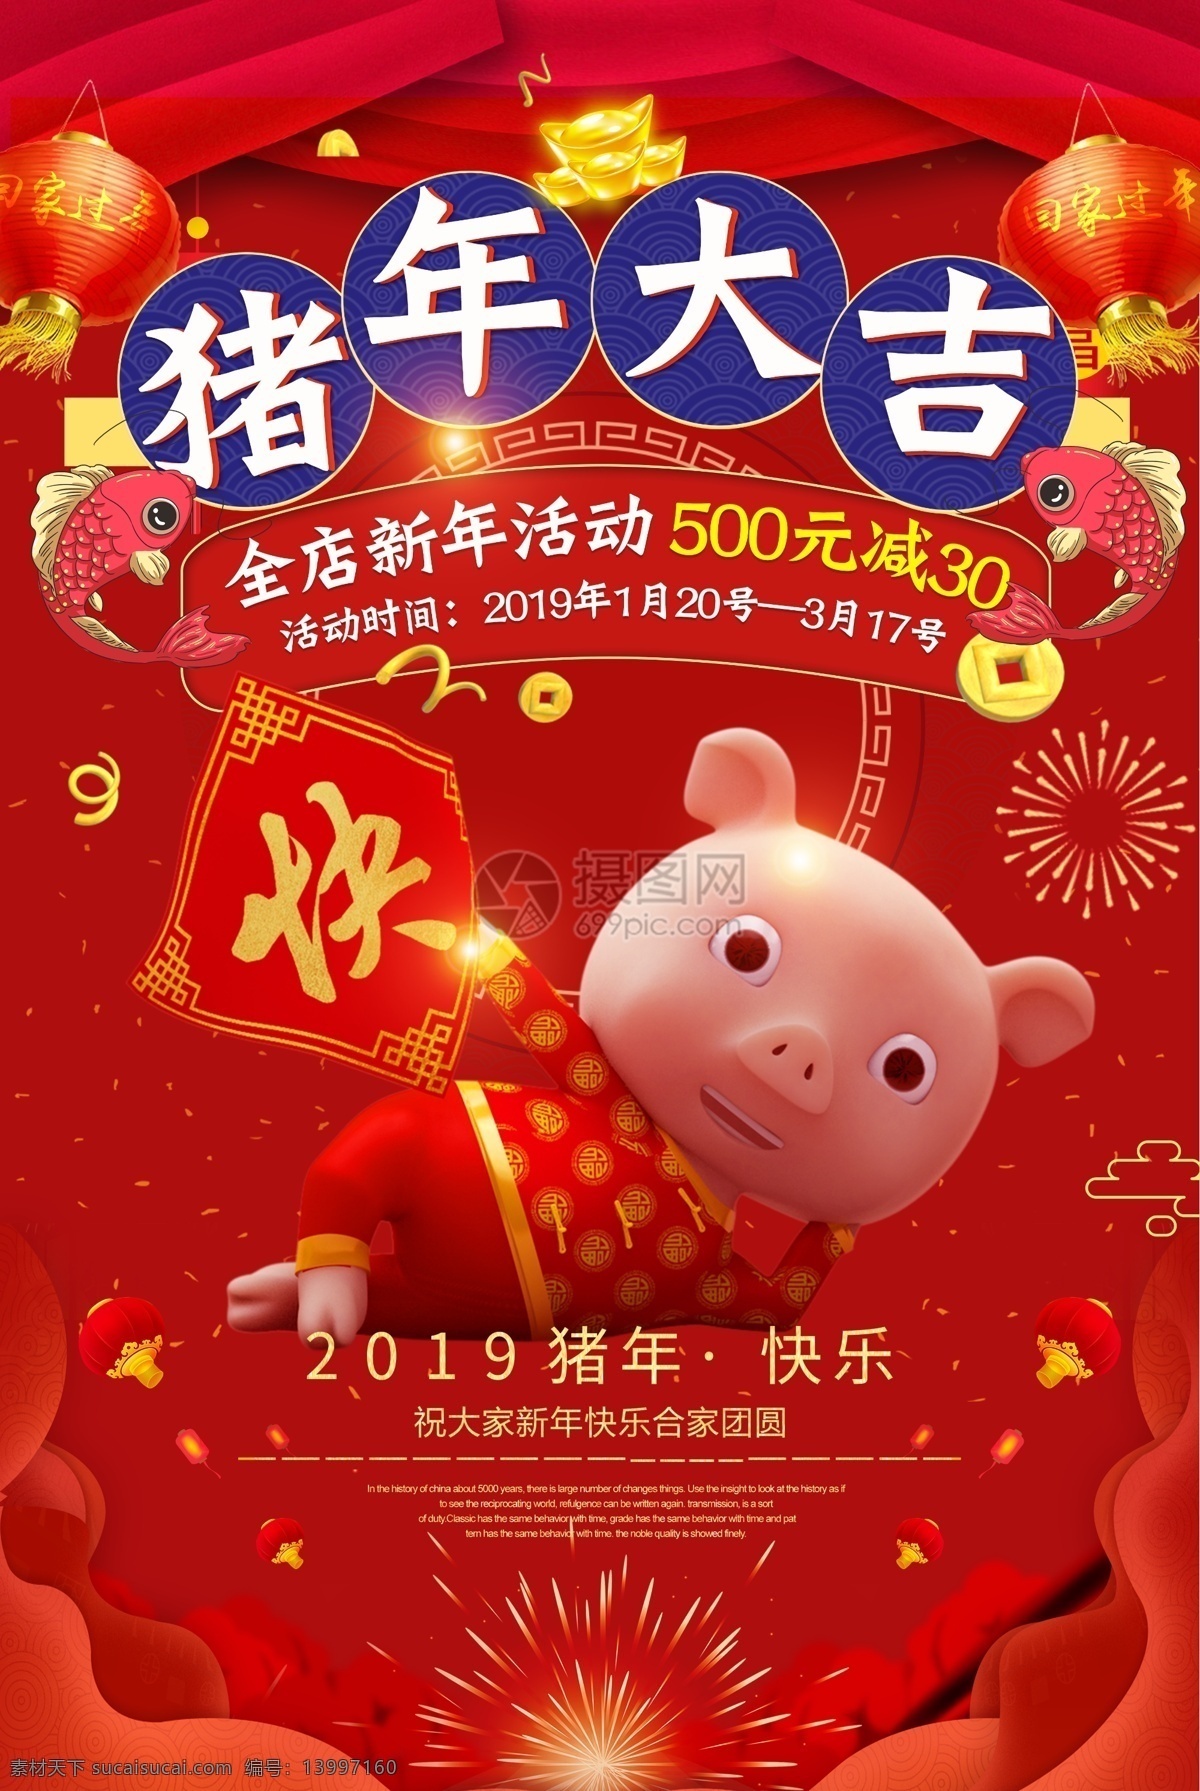 猪年 大吉 新年 促销 年货 海报 猪年大吉 新年促销 促销年货 促销海报 锦鲤 2019